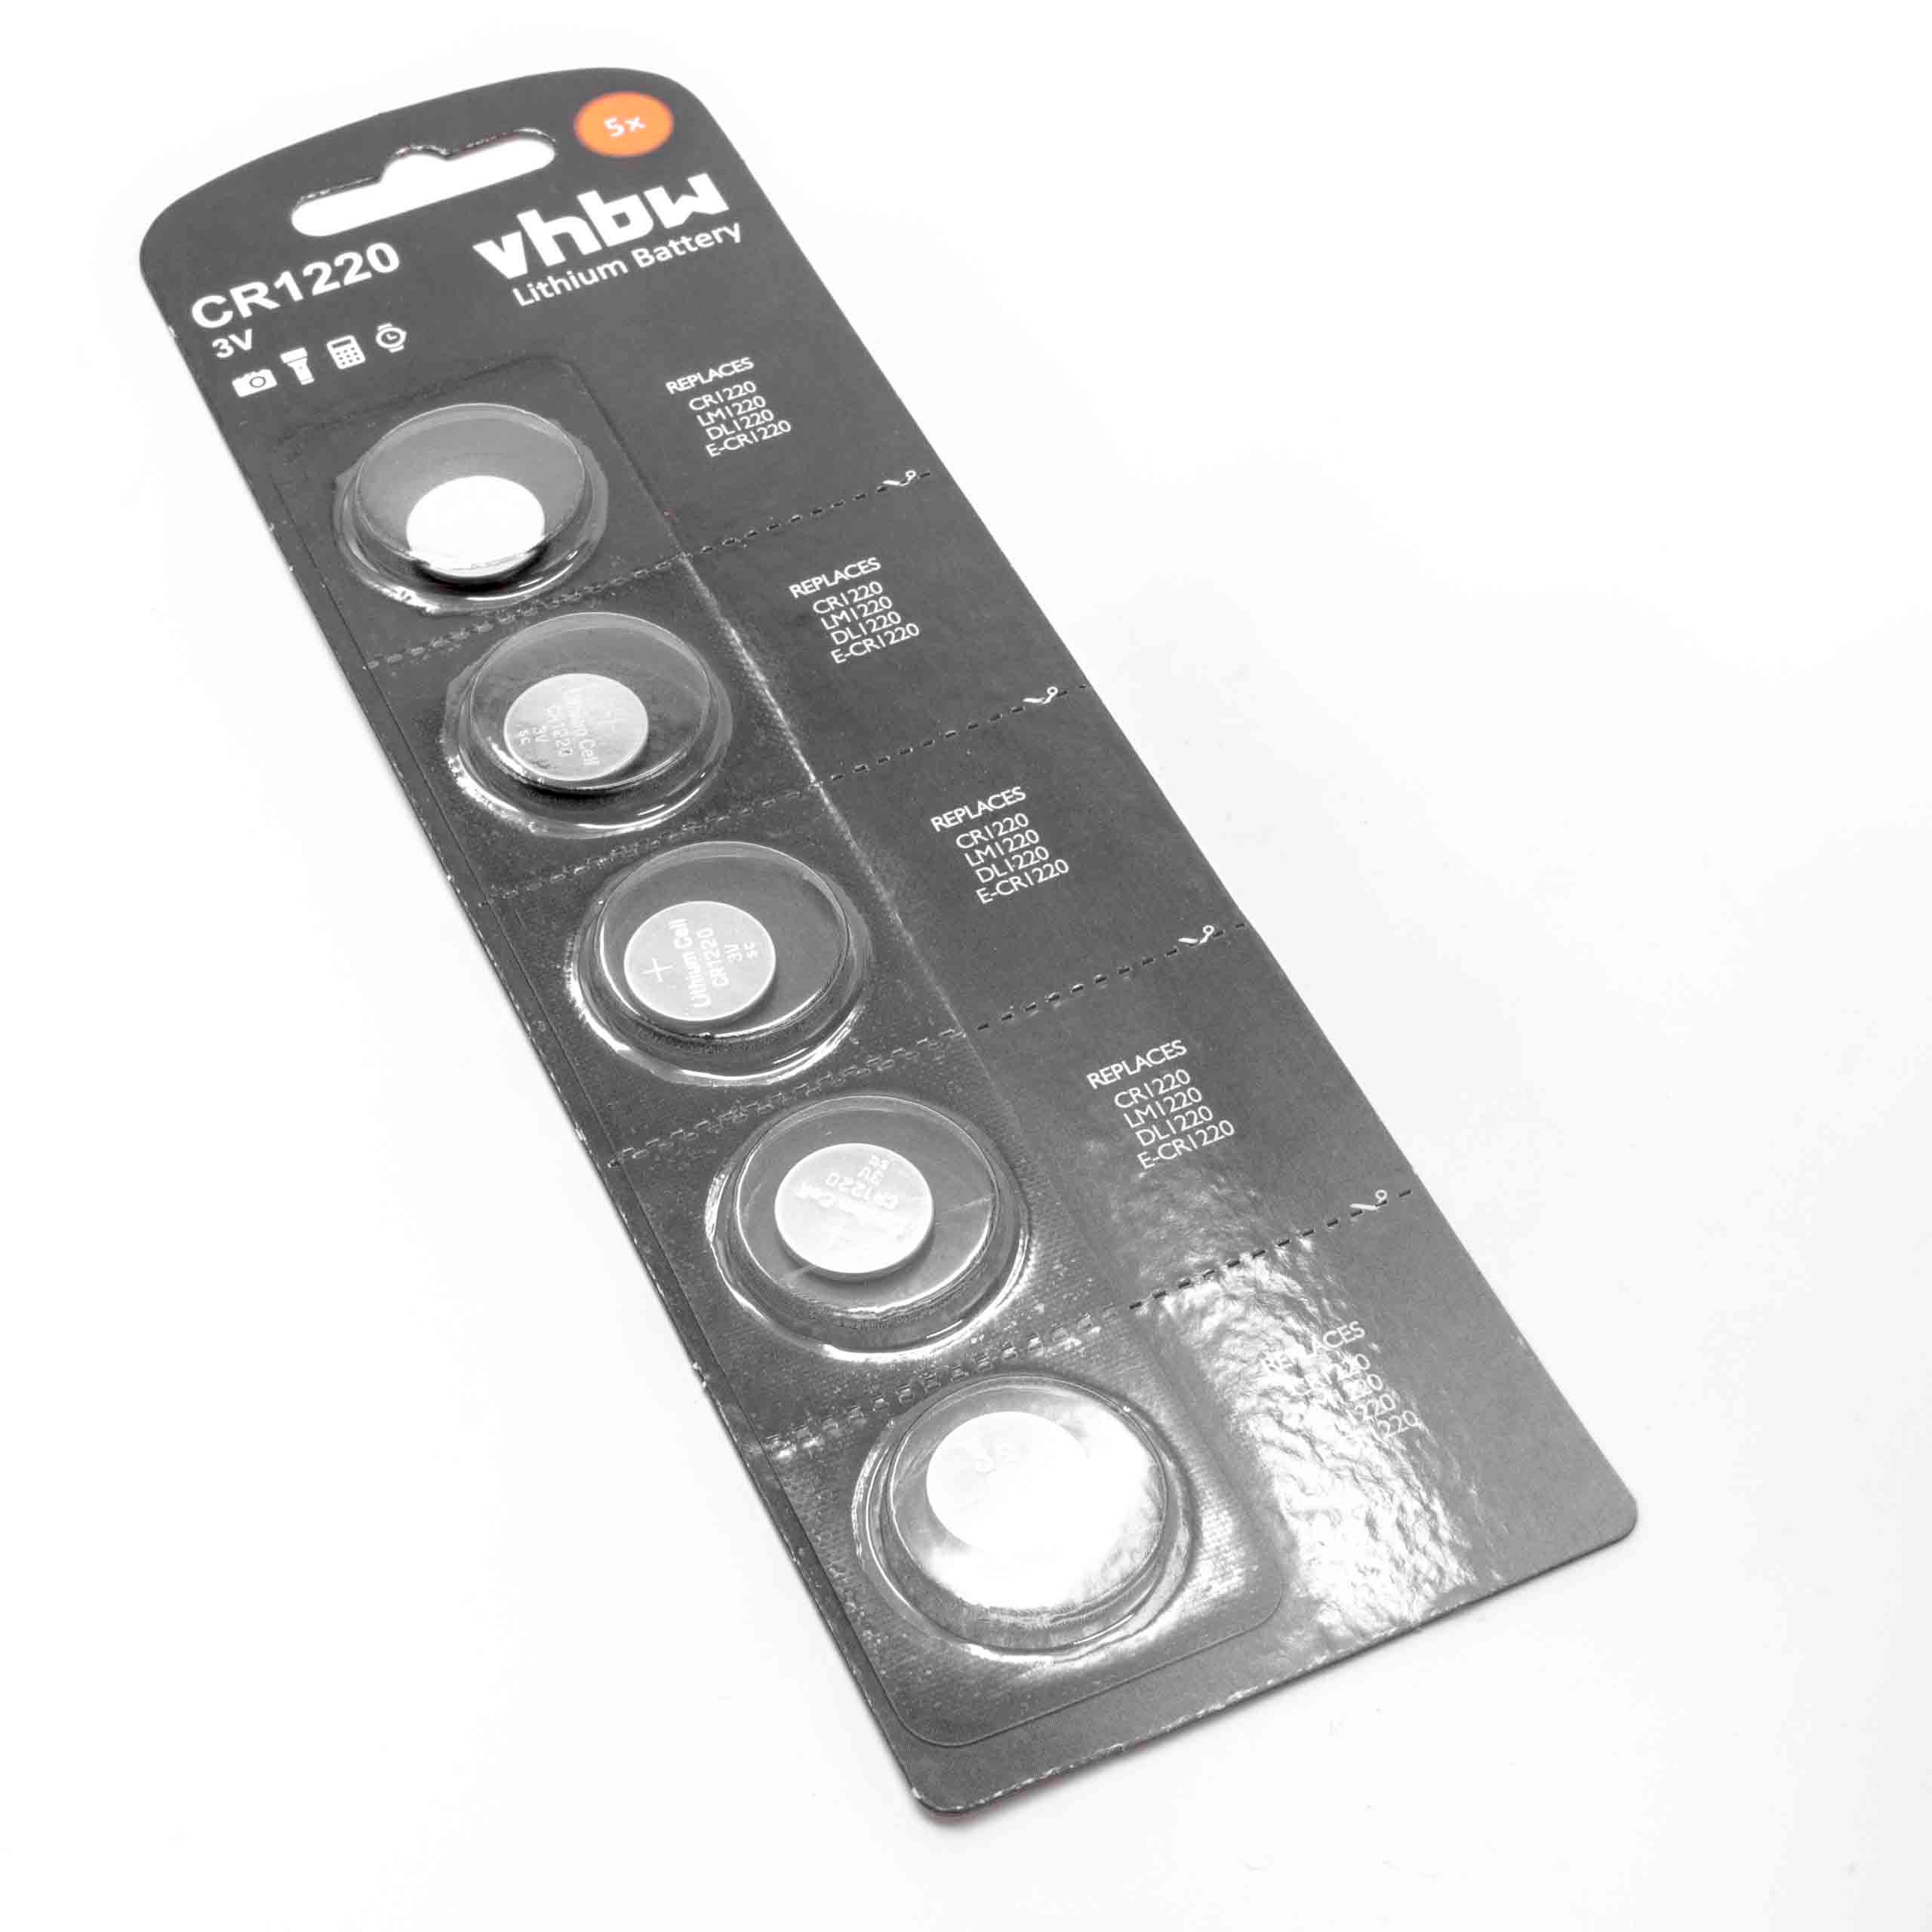 5x pilas de botón Li-Ion tipo CR1220 3 V compatible con relojes, llaves de coche, etc.